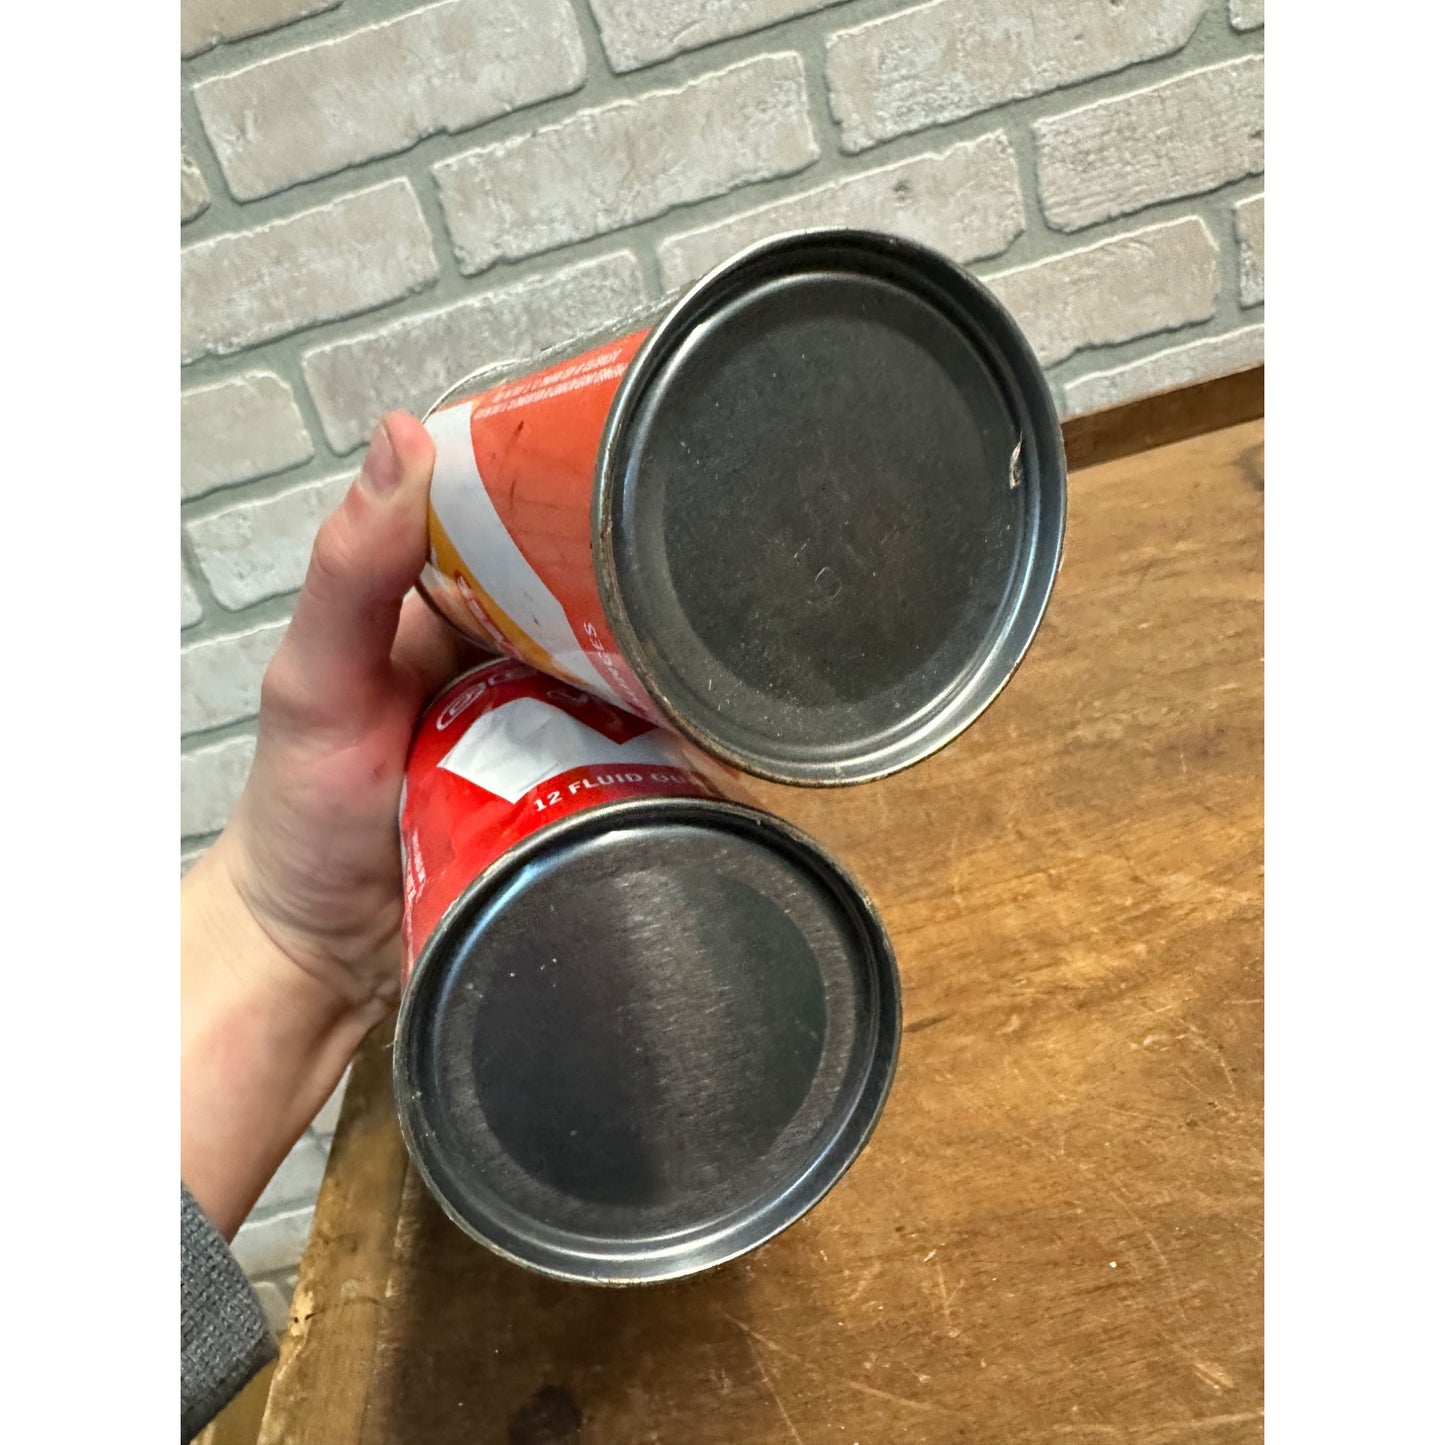 Vintage Vess Soda Pop Cans (2) Cola + Orange Steel Pull Tab Flat Top